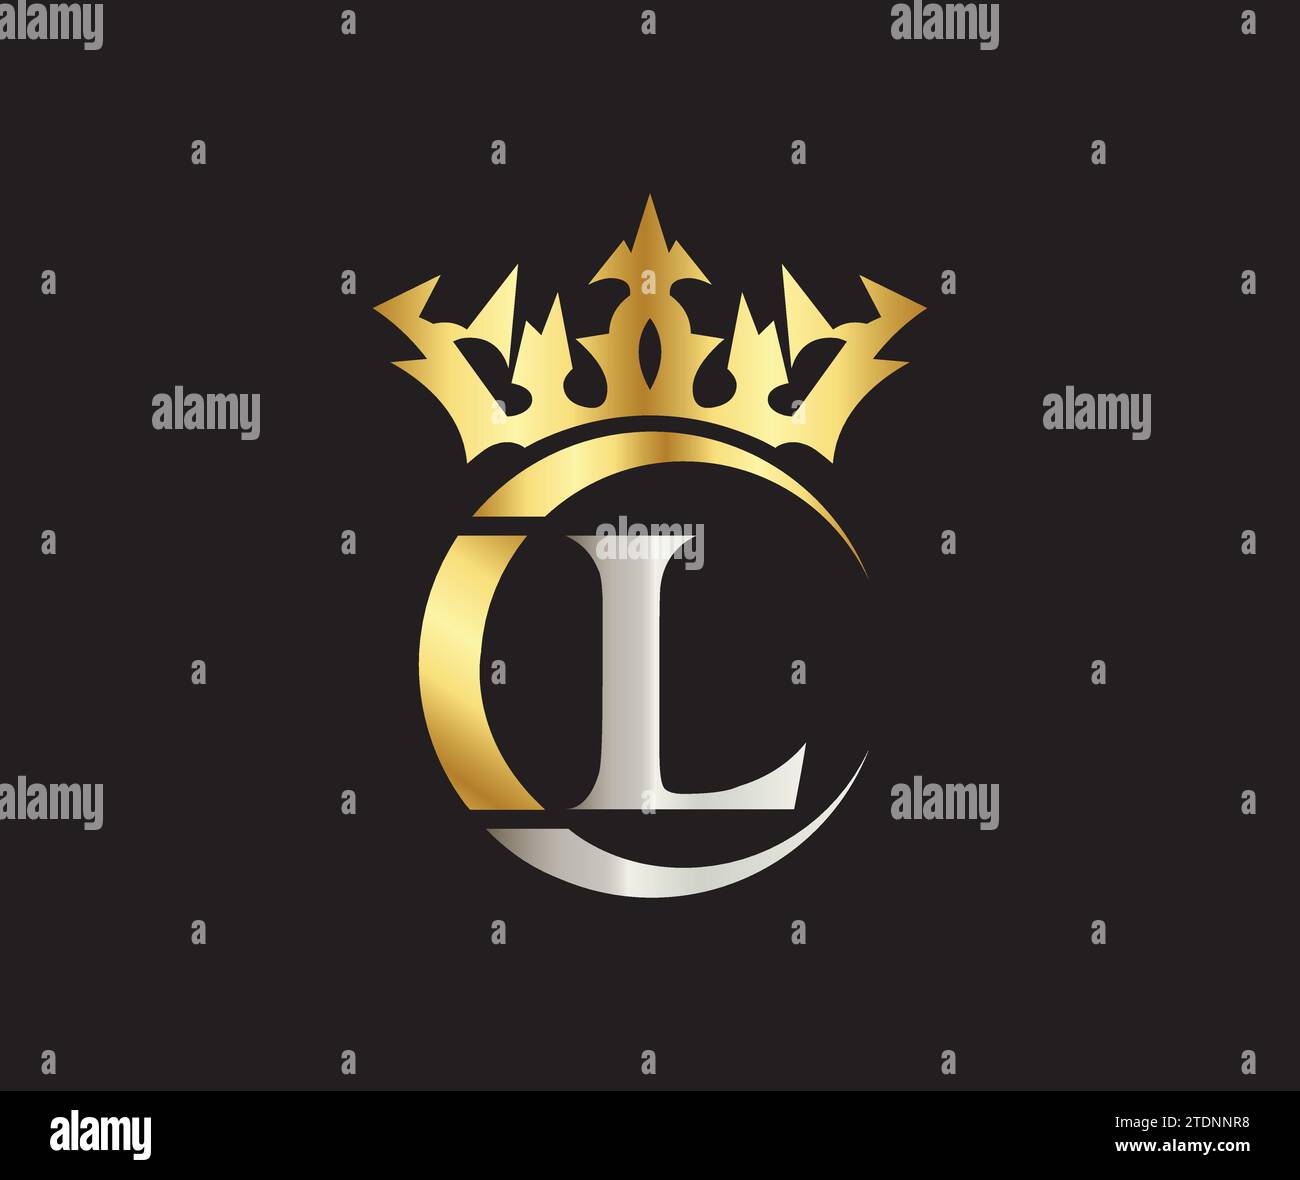 L Letter Crown Luxus Königreich Zeichen mit Golden Color Company Logo Design Stock Vektor